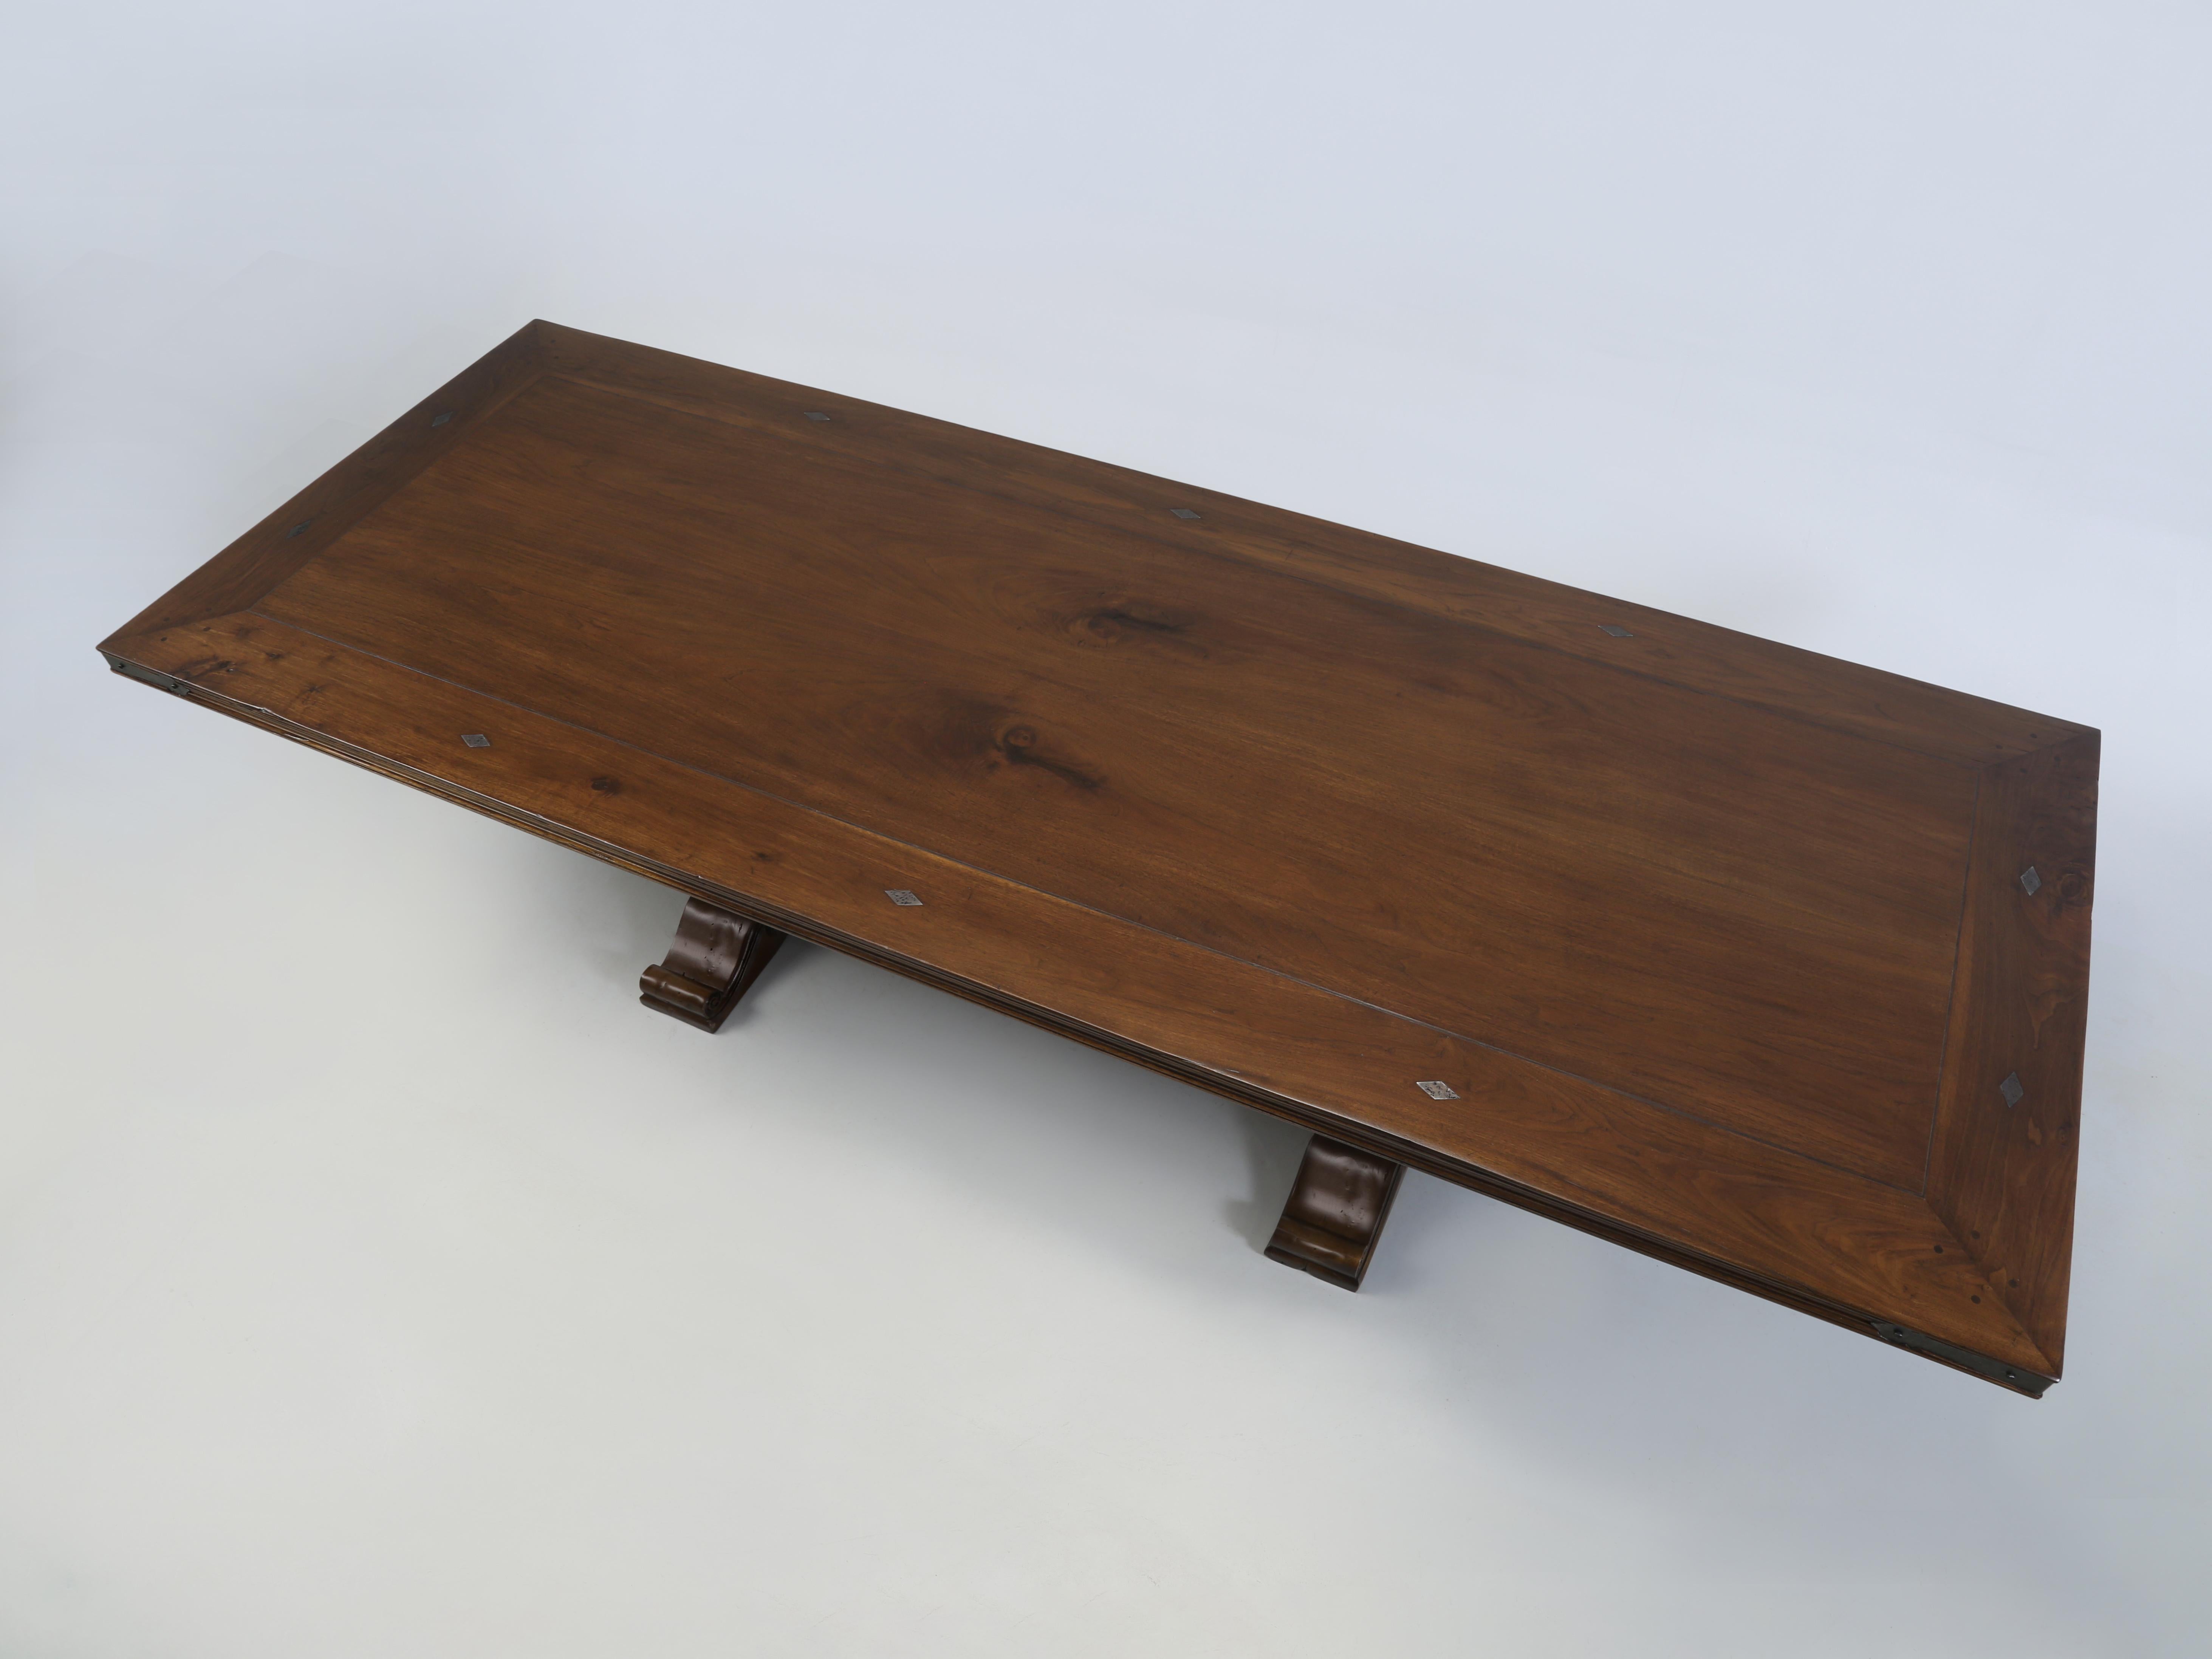 Table de salle à manger en noyer d'inspiration française fabriquée par Old Plank dans notre département de menuiserie et, bien sûr, disponible dans toutes les dimensions et finitions que vous souhaitez. Nous sommes tombés sur cette table de salle à